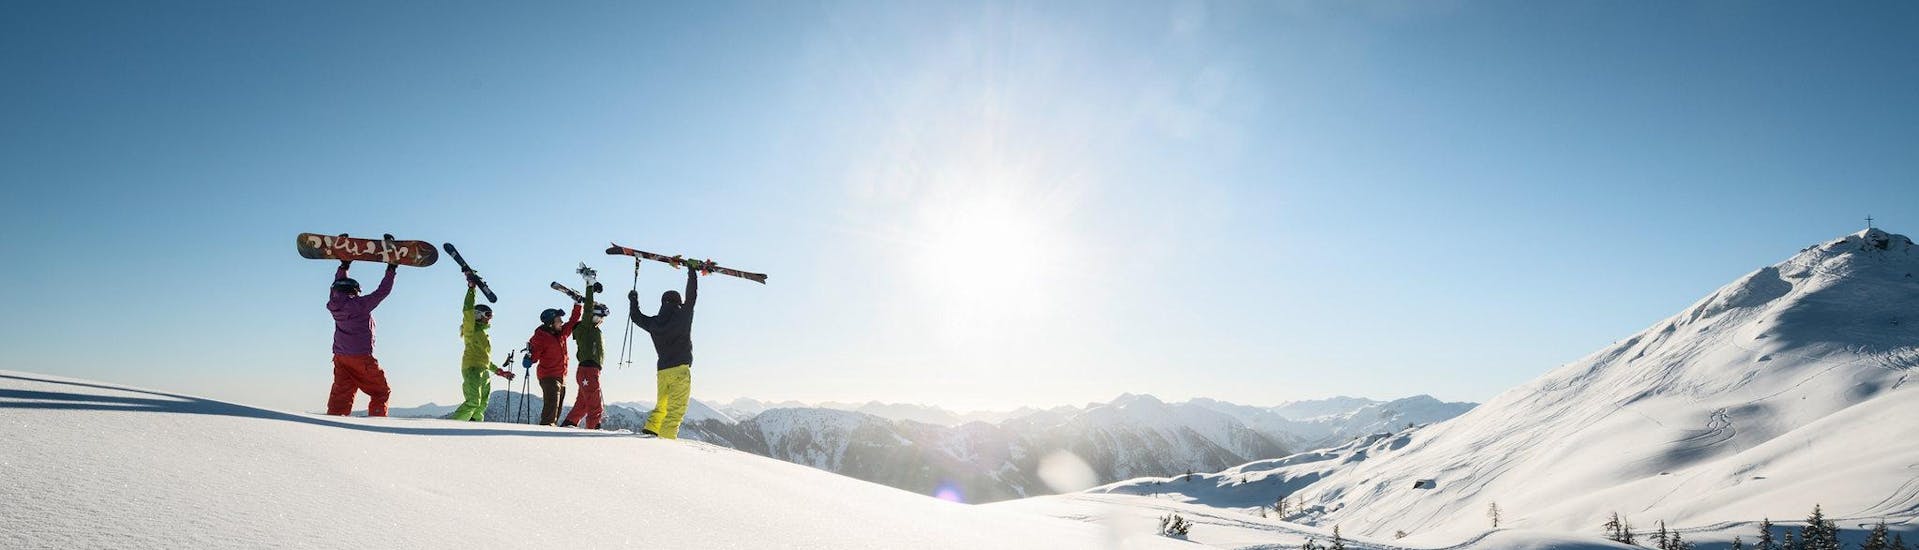 Ausblick auf die sonnige Berglandschaft beim Skifahren lernen mit den Skischulen in Kleinarl-Flachauwinkl.